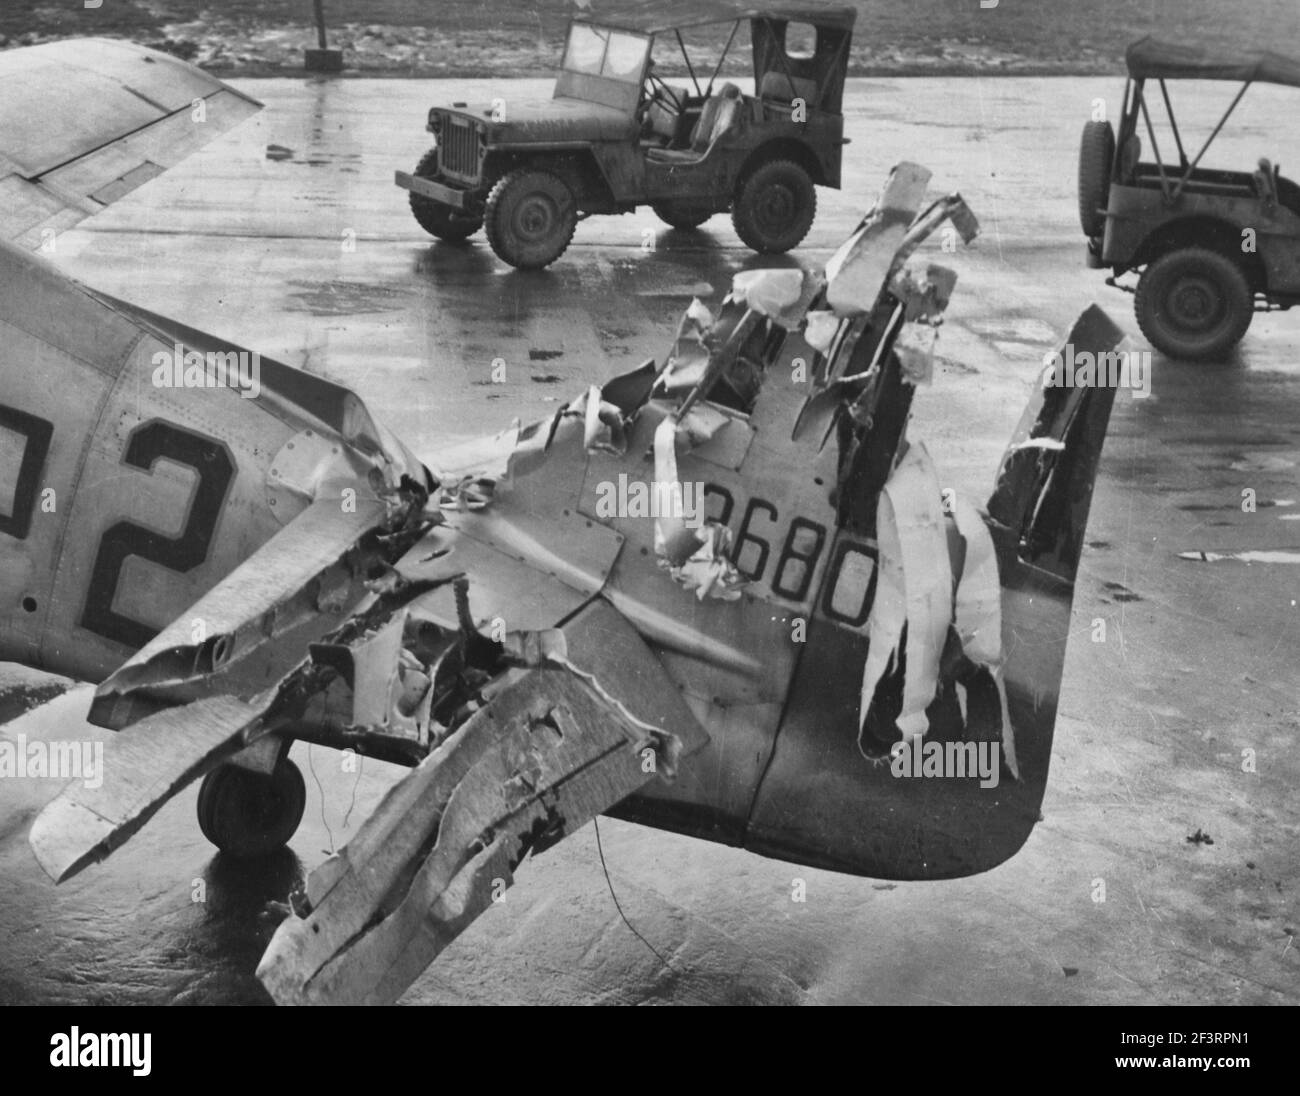 Mit EINER abgerissenen Hecksektion, die aus Feindkämpfen resultiert Diese nordamerikanische P-51 (A/C 36800) der 353Rd Fighter Group schaffte es, zu ihrer Basis in England zurückzukommen. 1. Januar 1945 Stockfoto